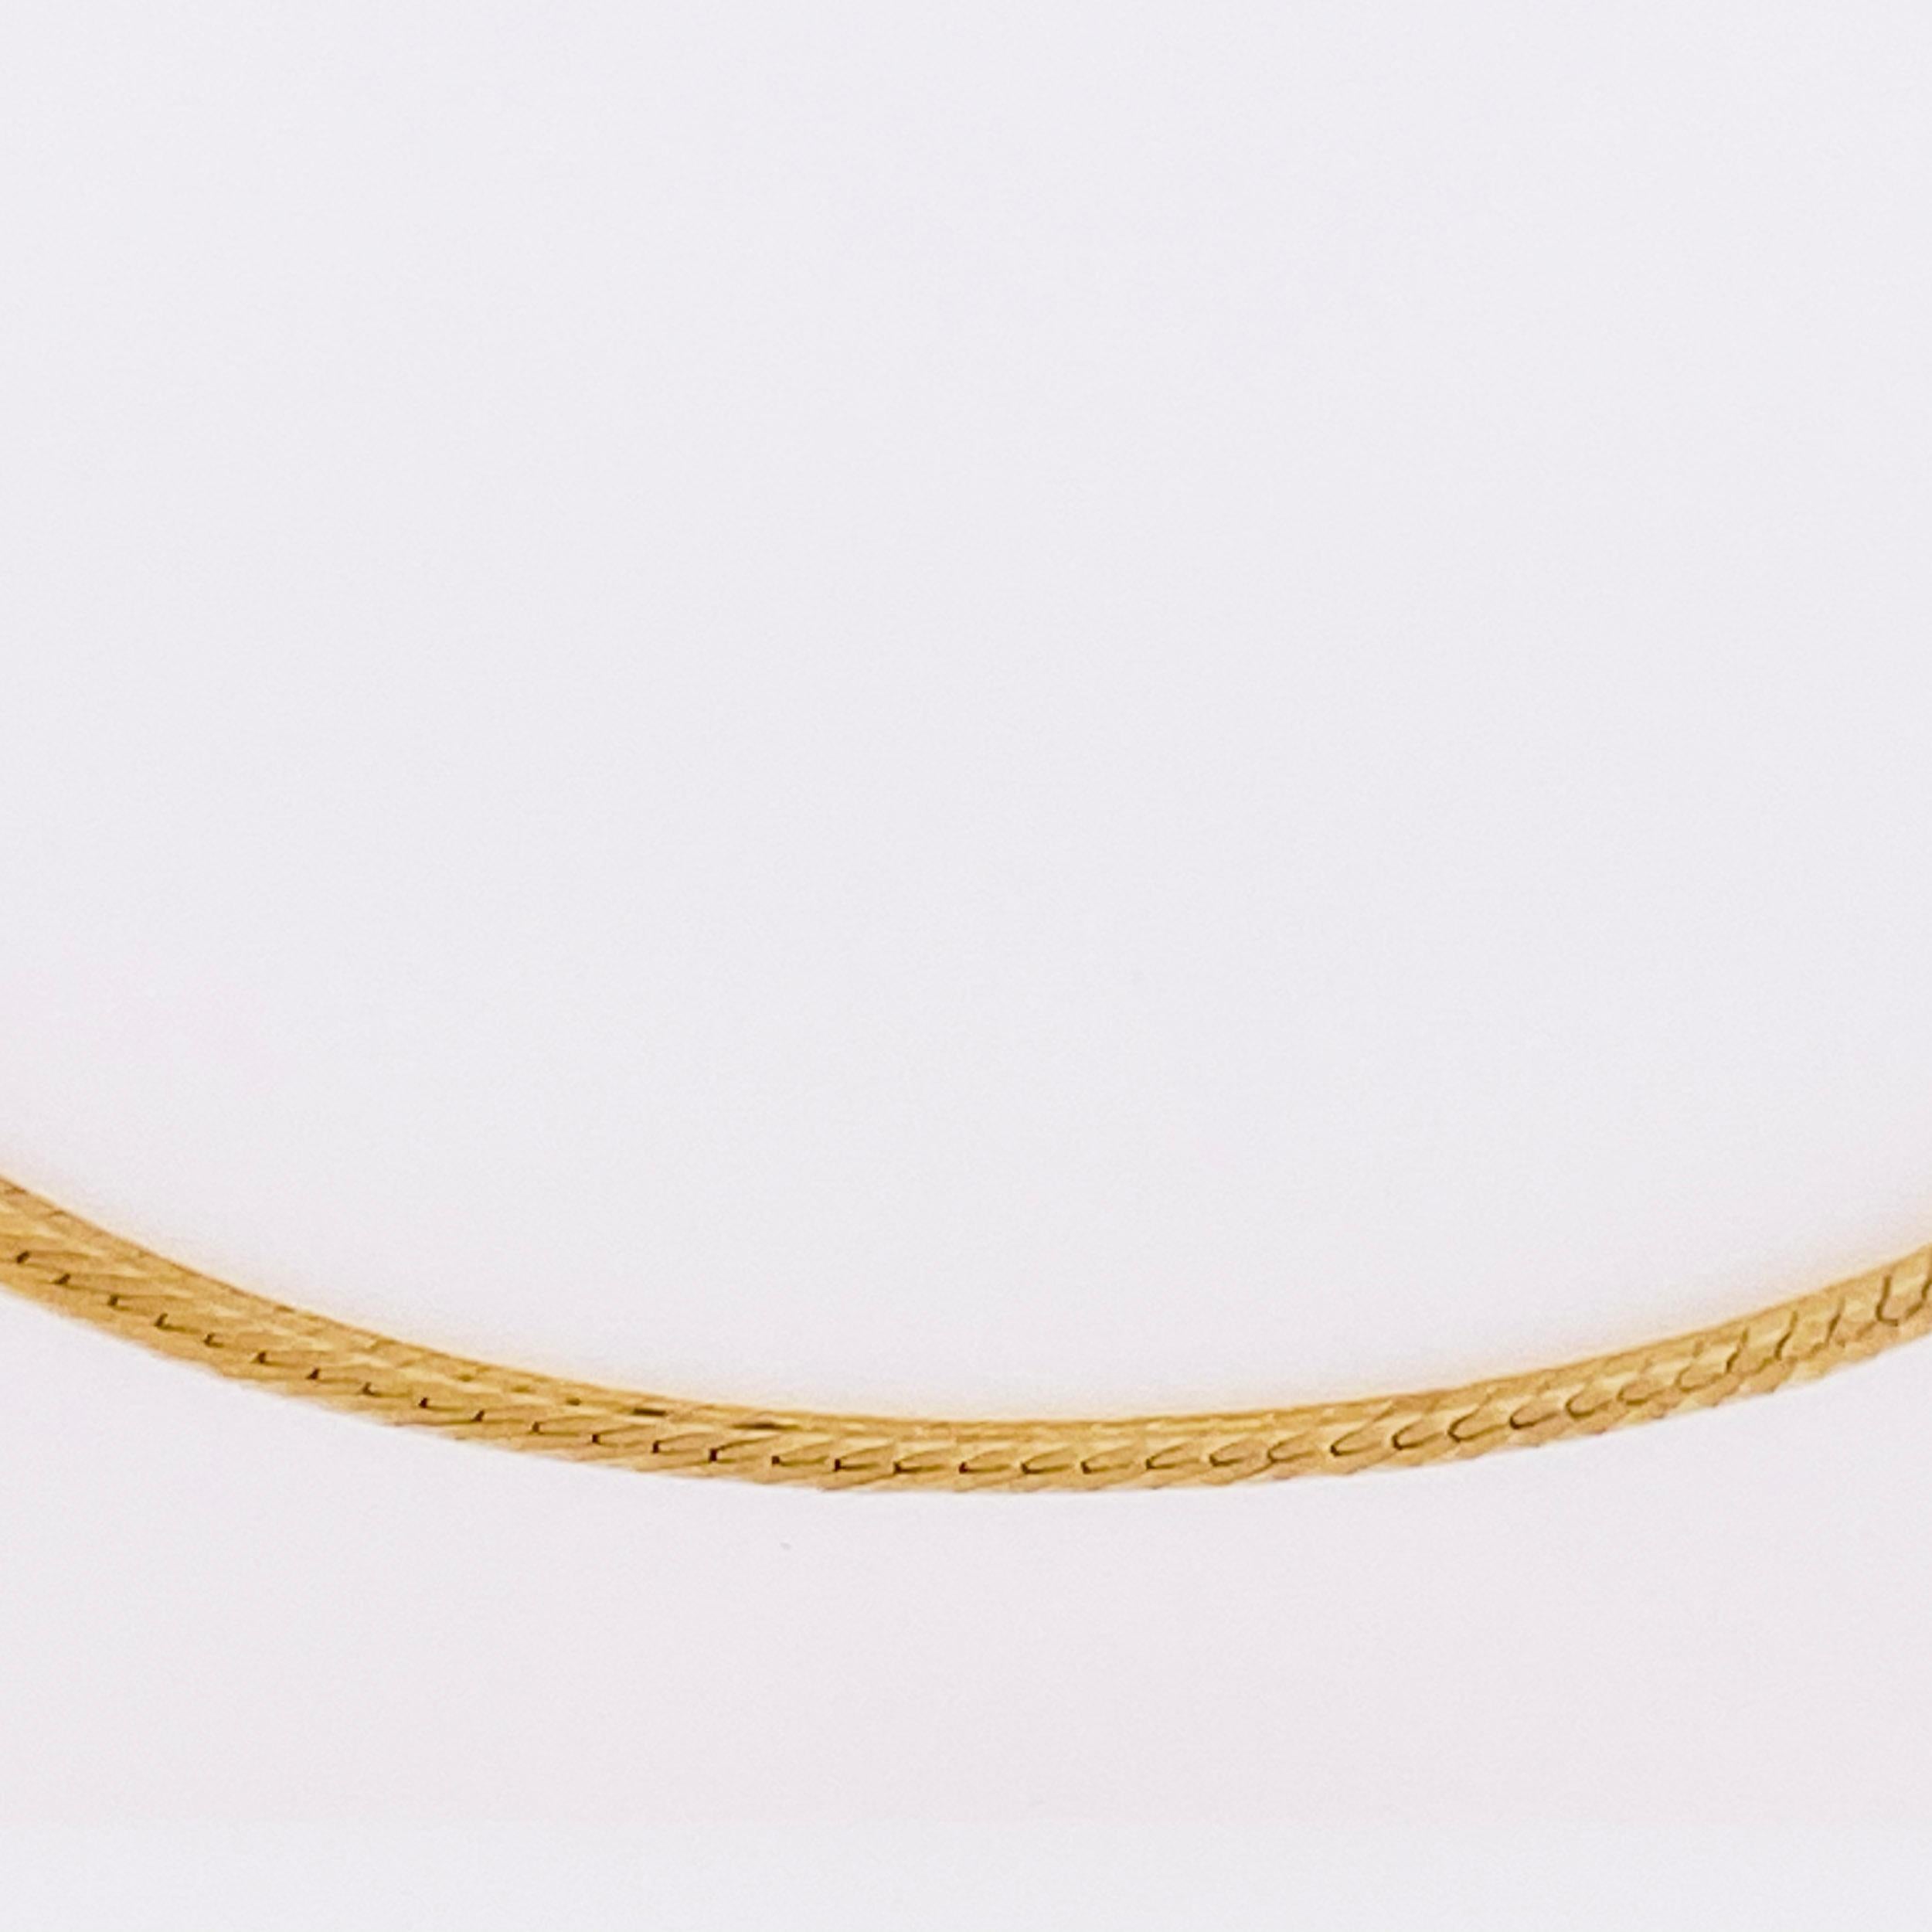 10k solid gold herringbone chain